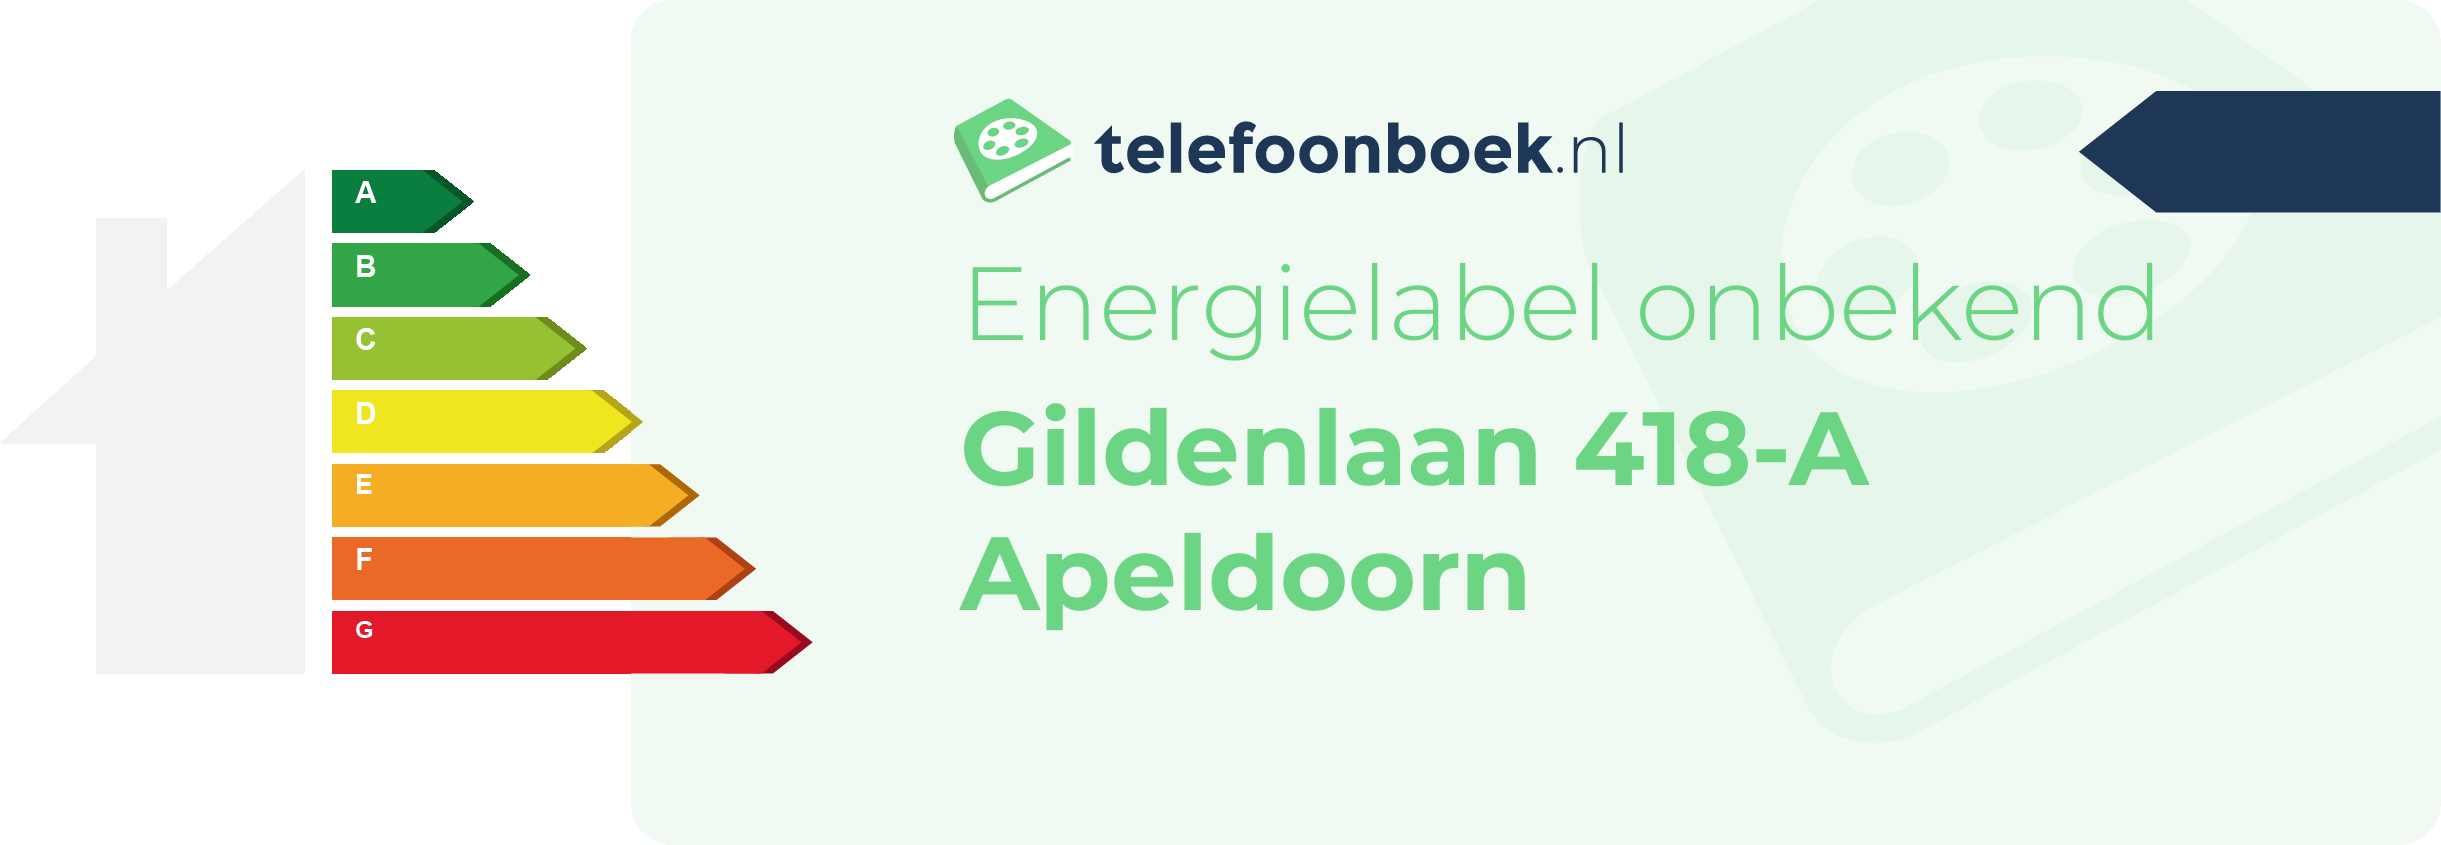 Energielabel Gildenlaan 418-A Apeldoorn